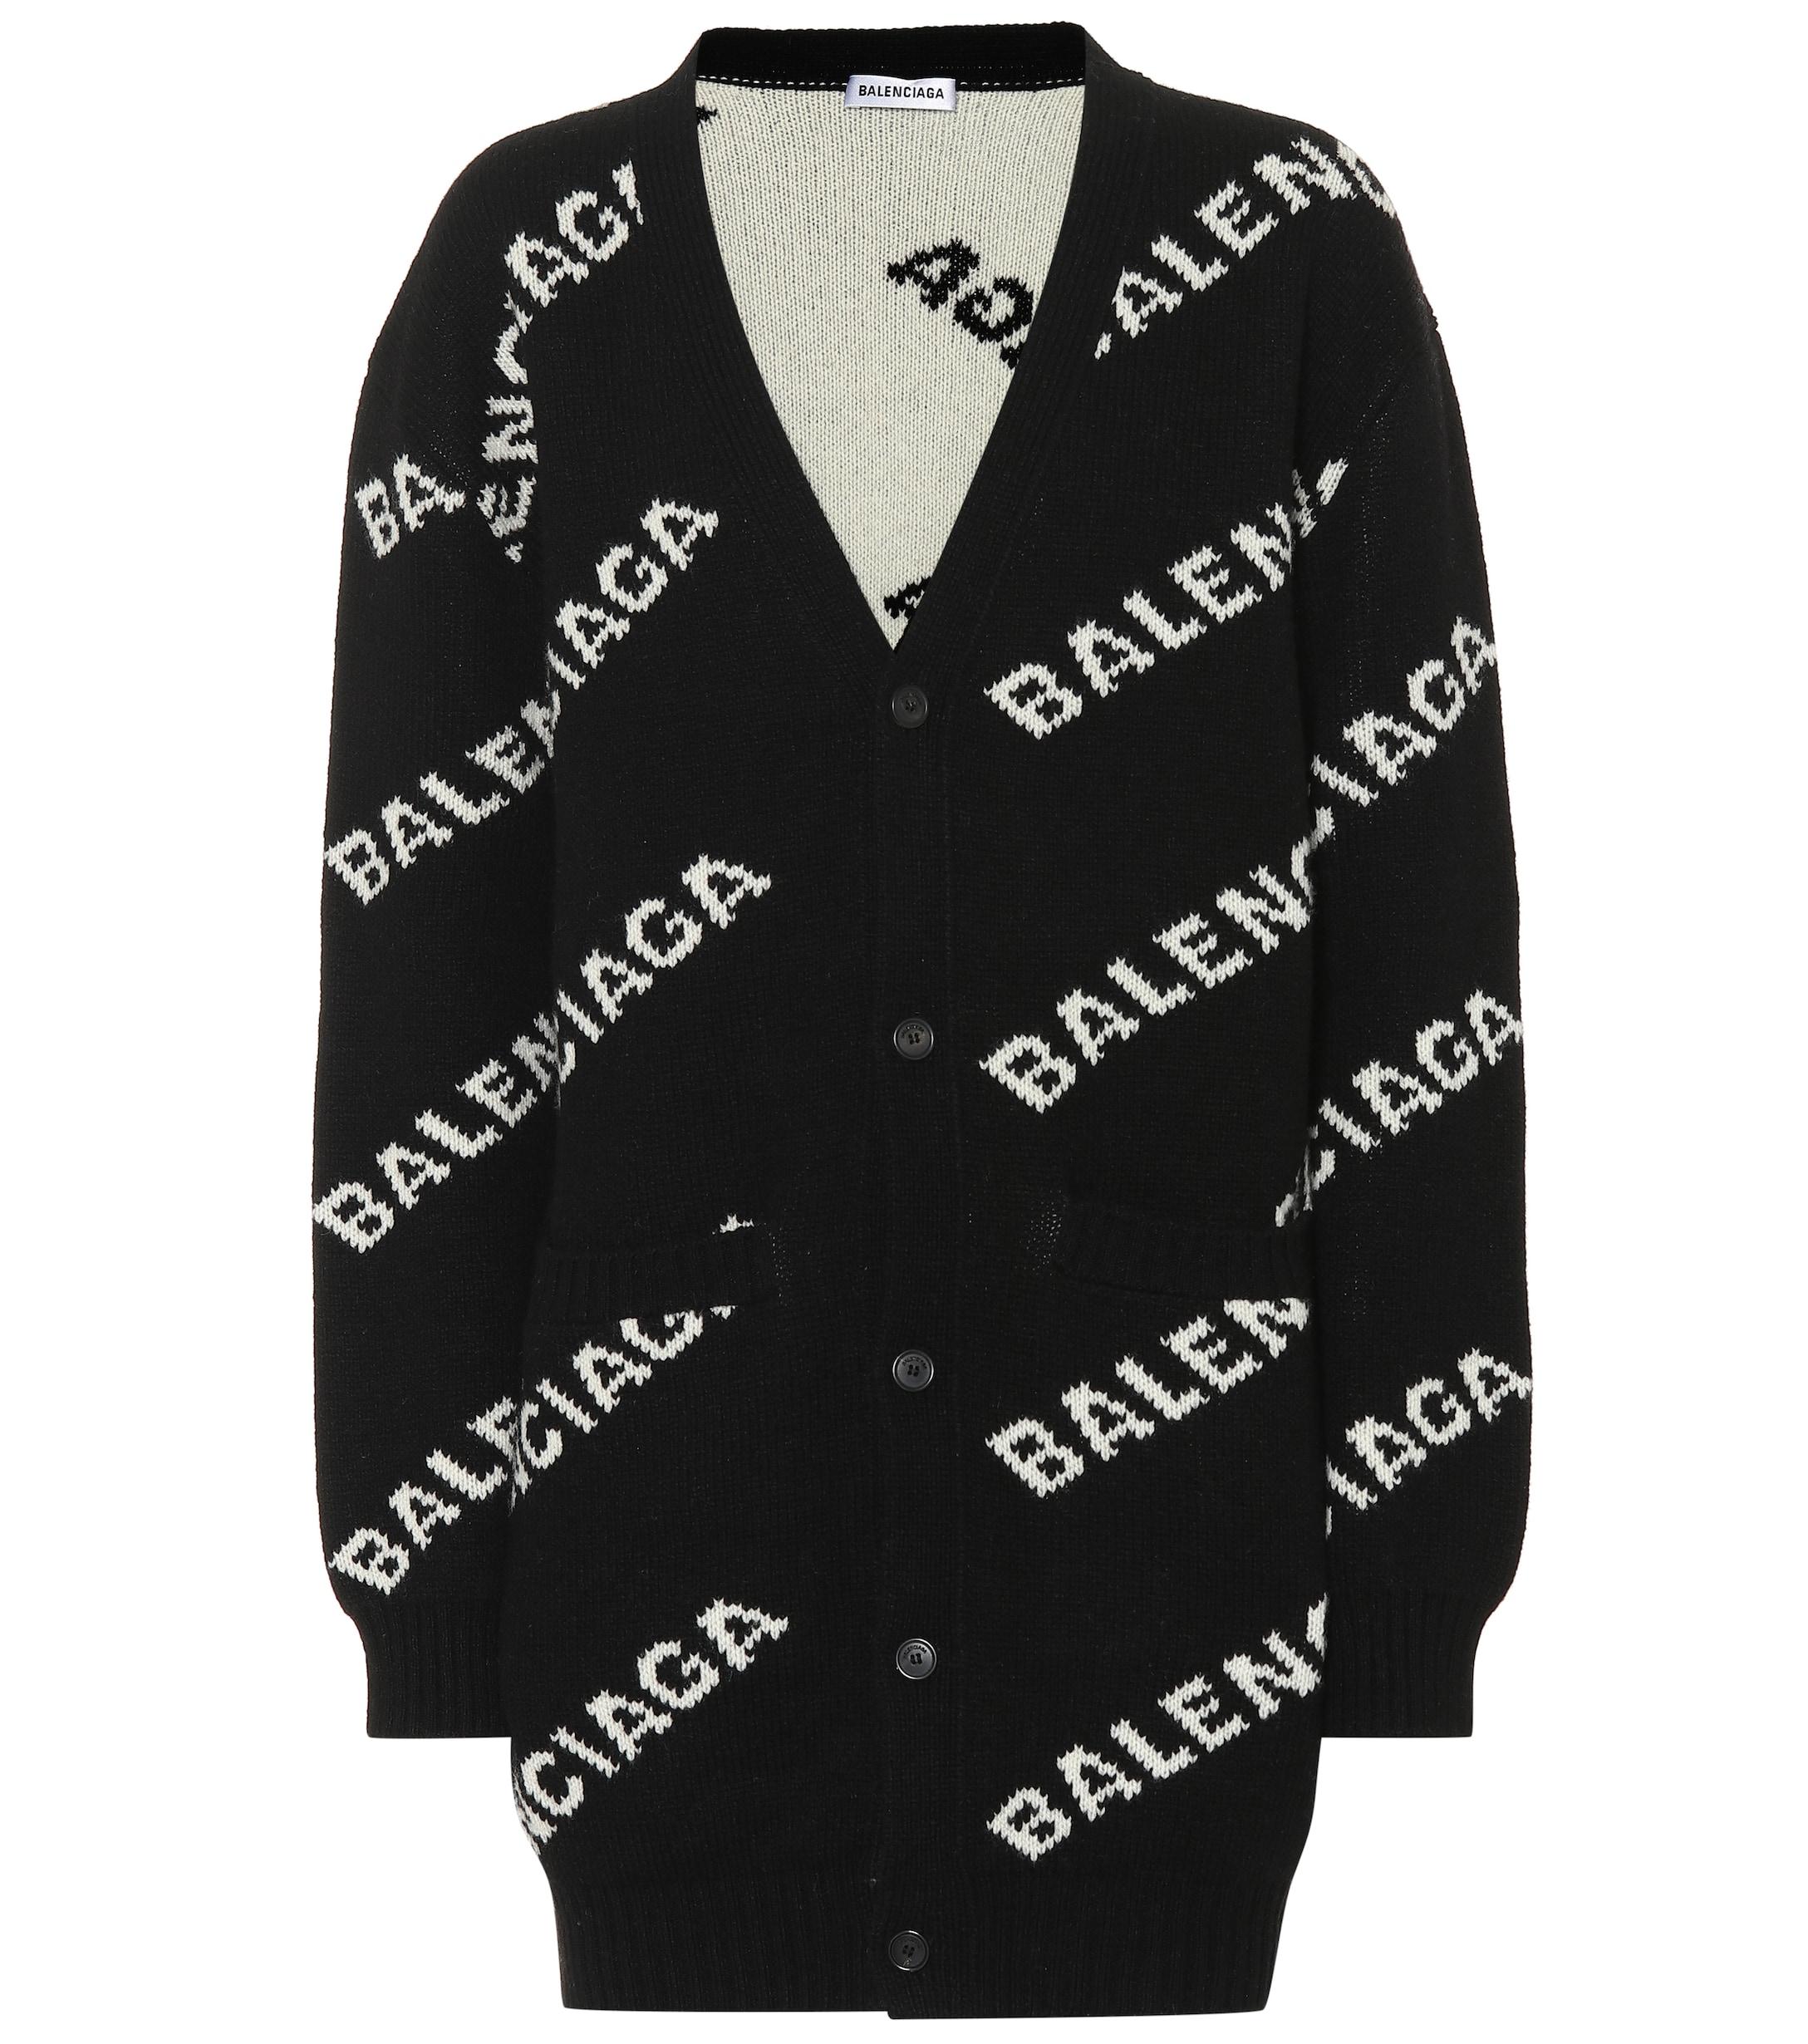 Balenciaga Wool Logo Cardigan in Black White (Black) - Lyst